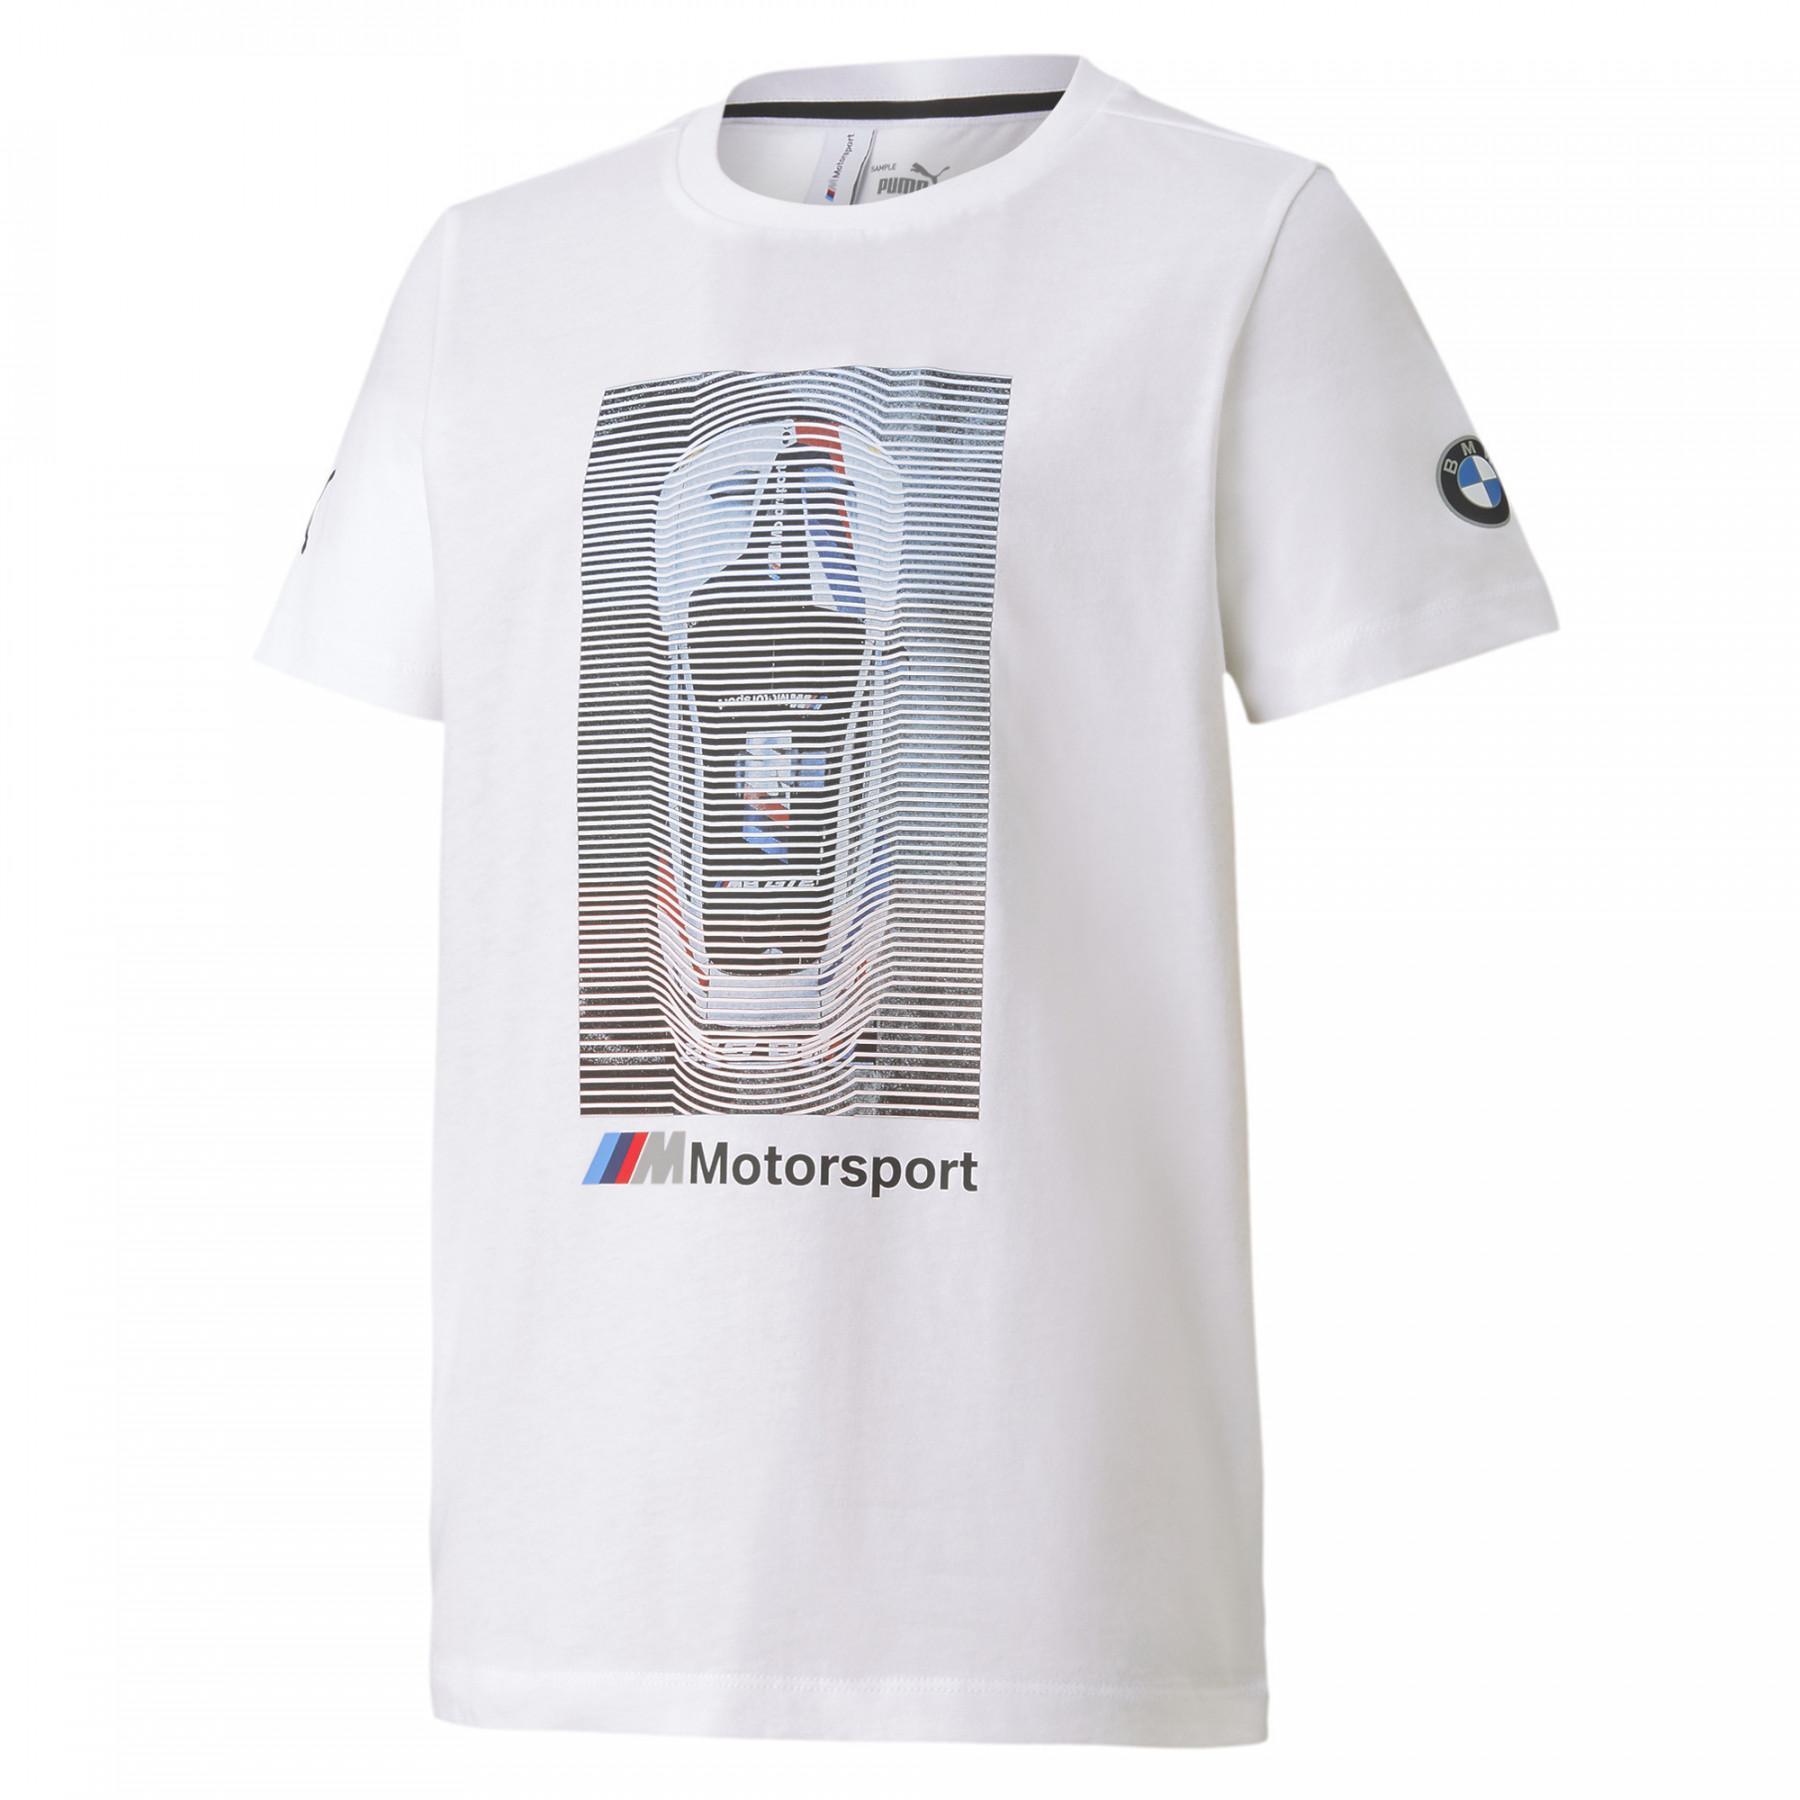 Kinder-T-shirt Bmw Motorsport Graphic